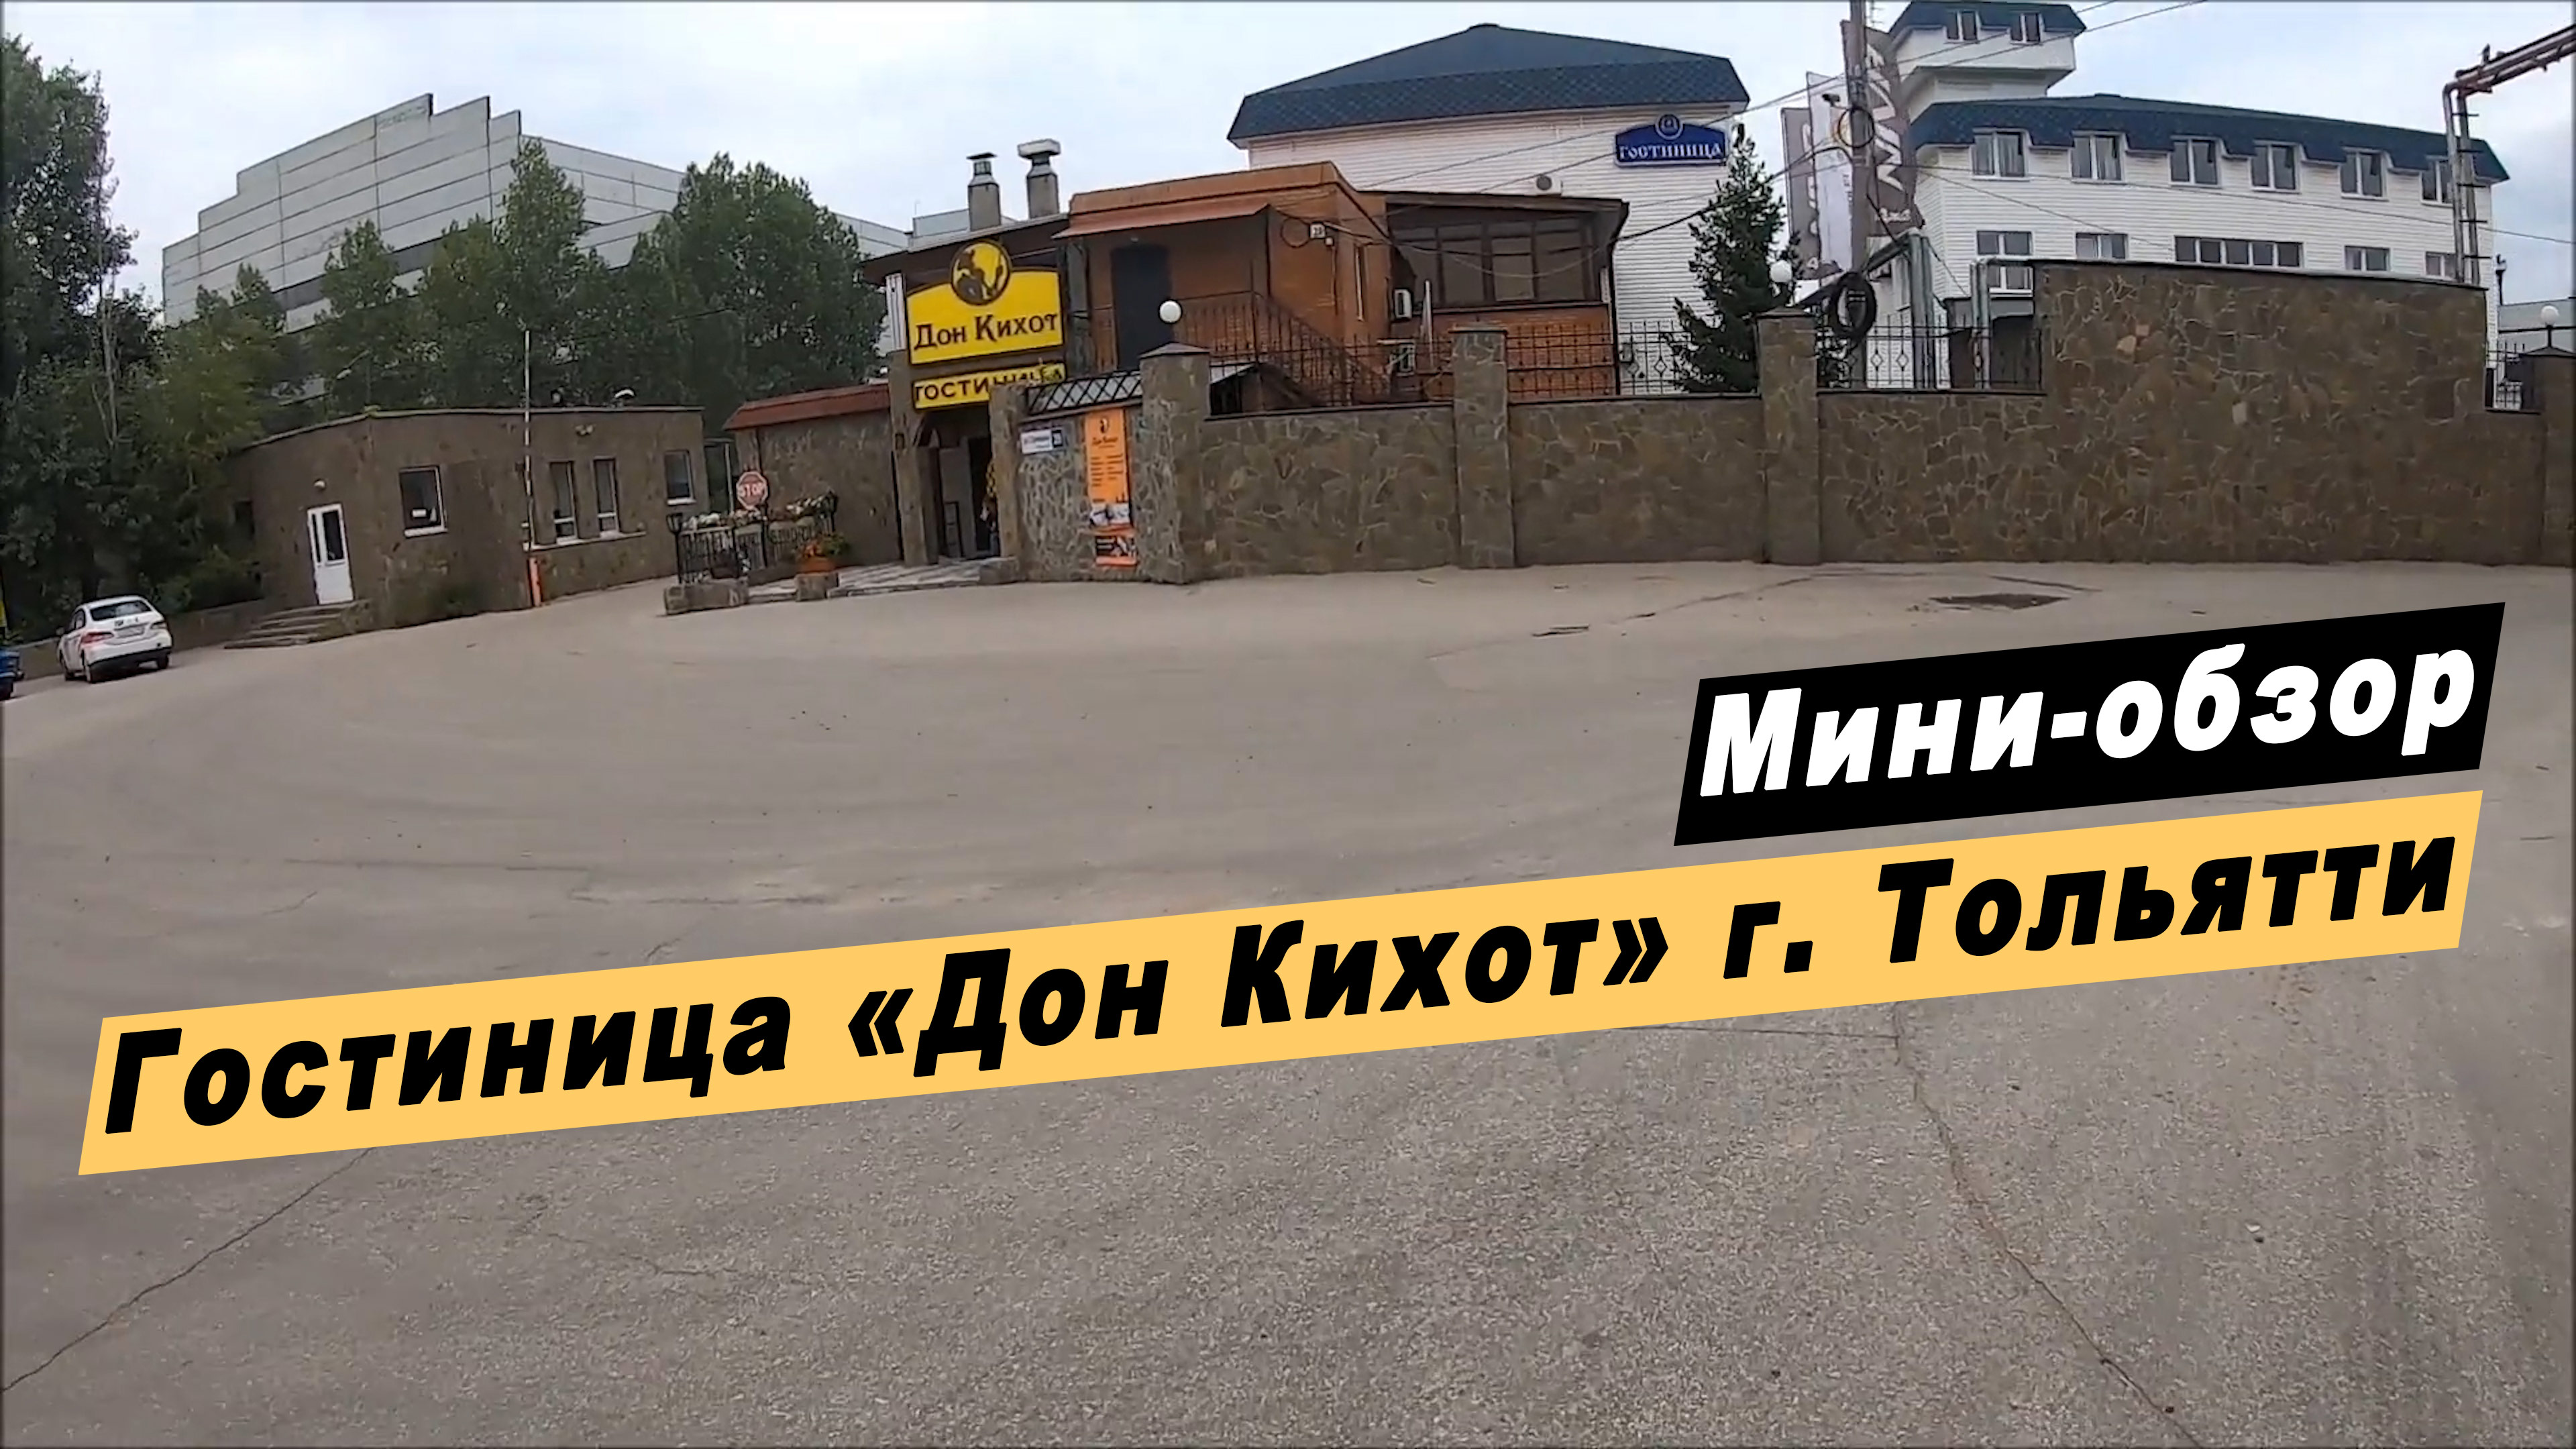 Мини-обзор гостиничного комплекса "Дон Кихот" в  городе Тольятти Самарской области.